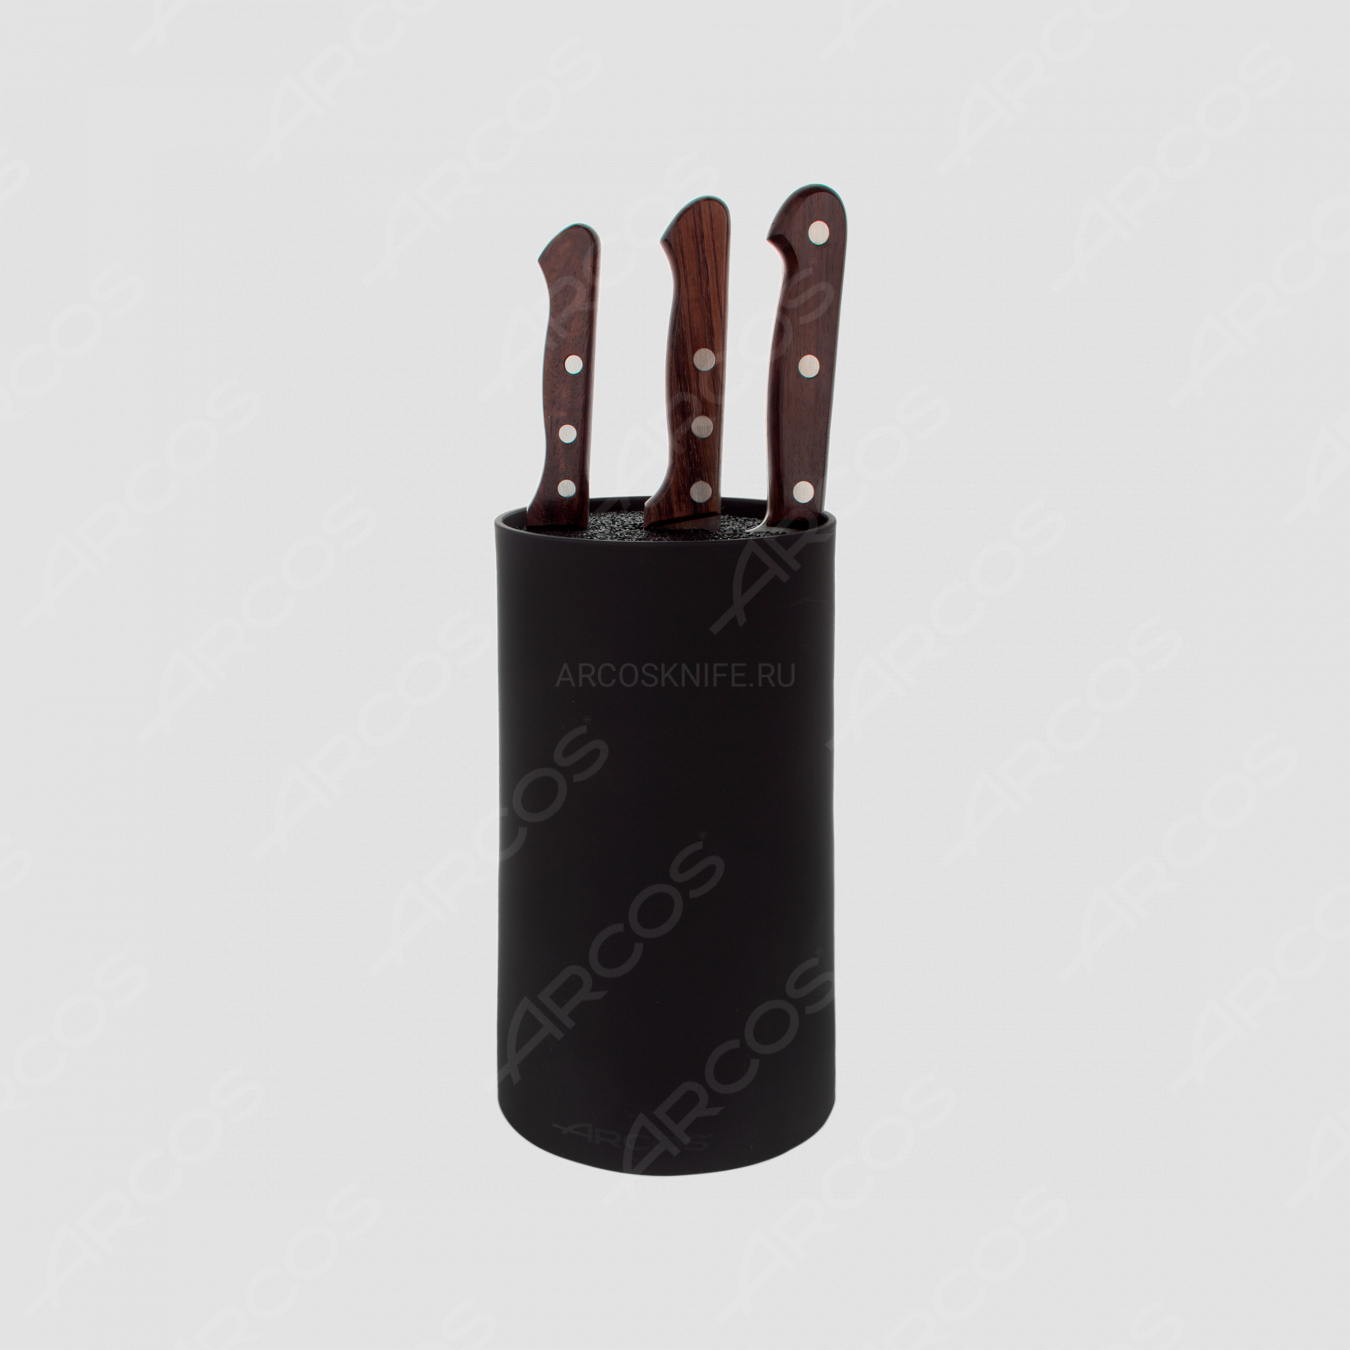 Набор из 3-х ножей с черной подставкой, серия Atlantico, ARCOS, Испания